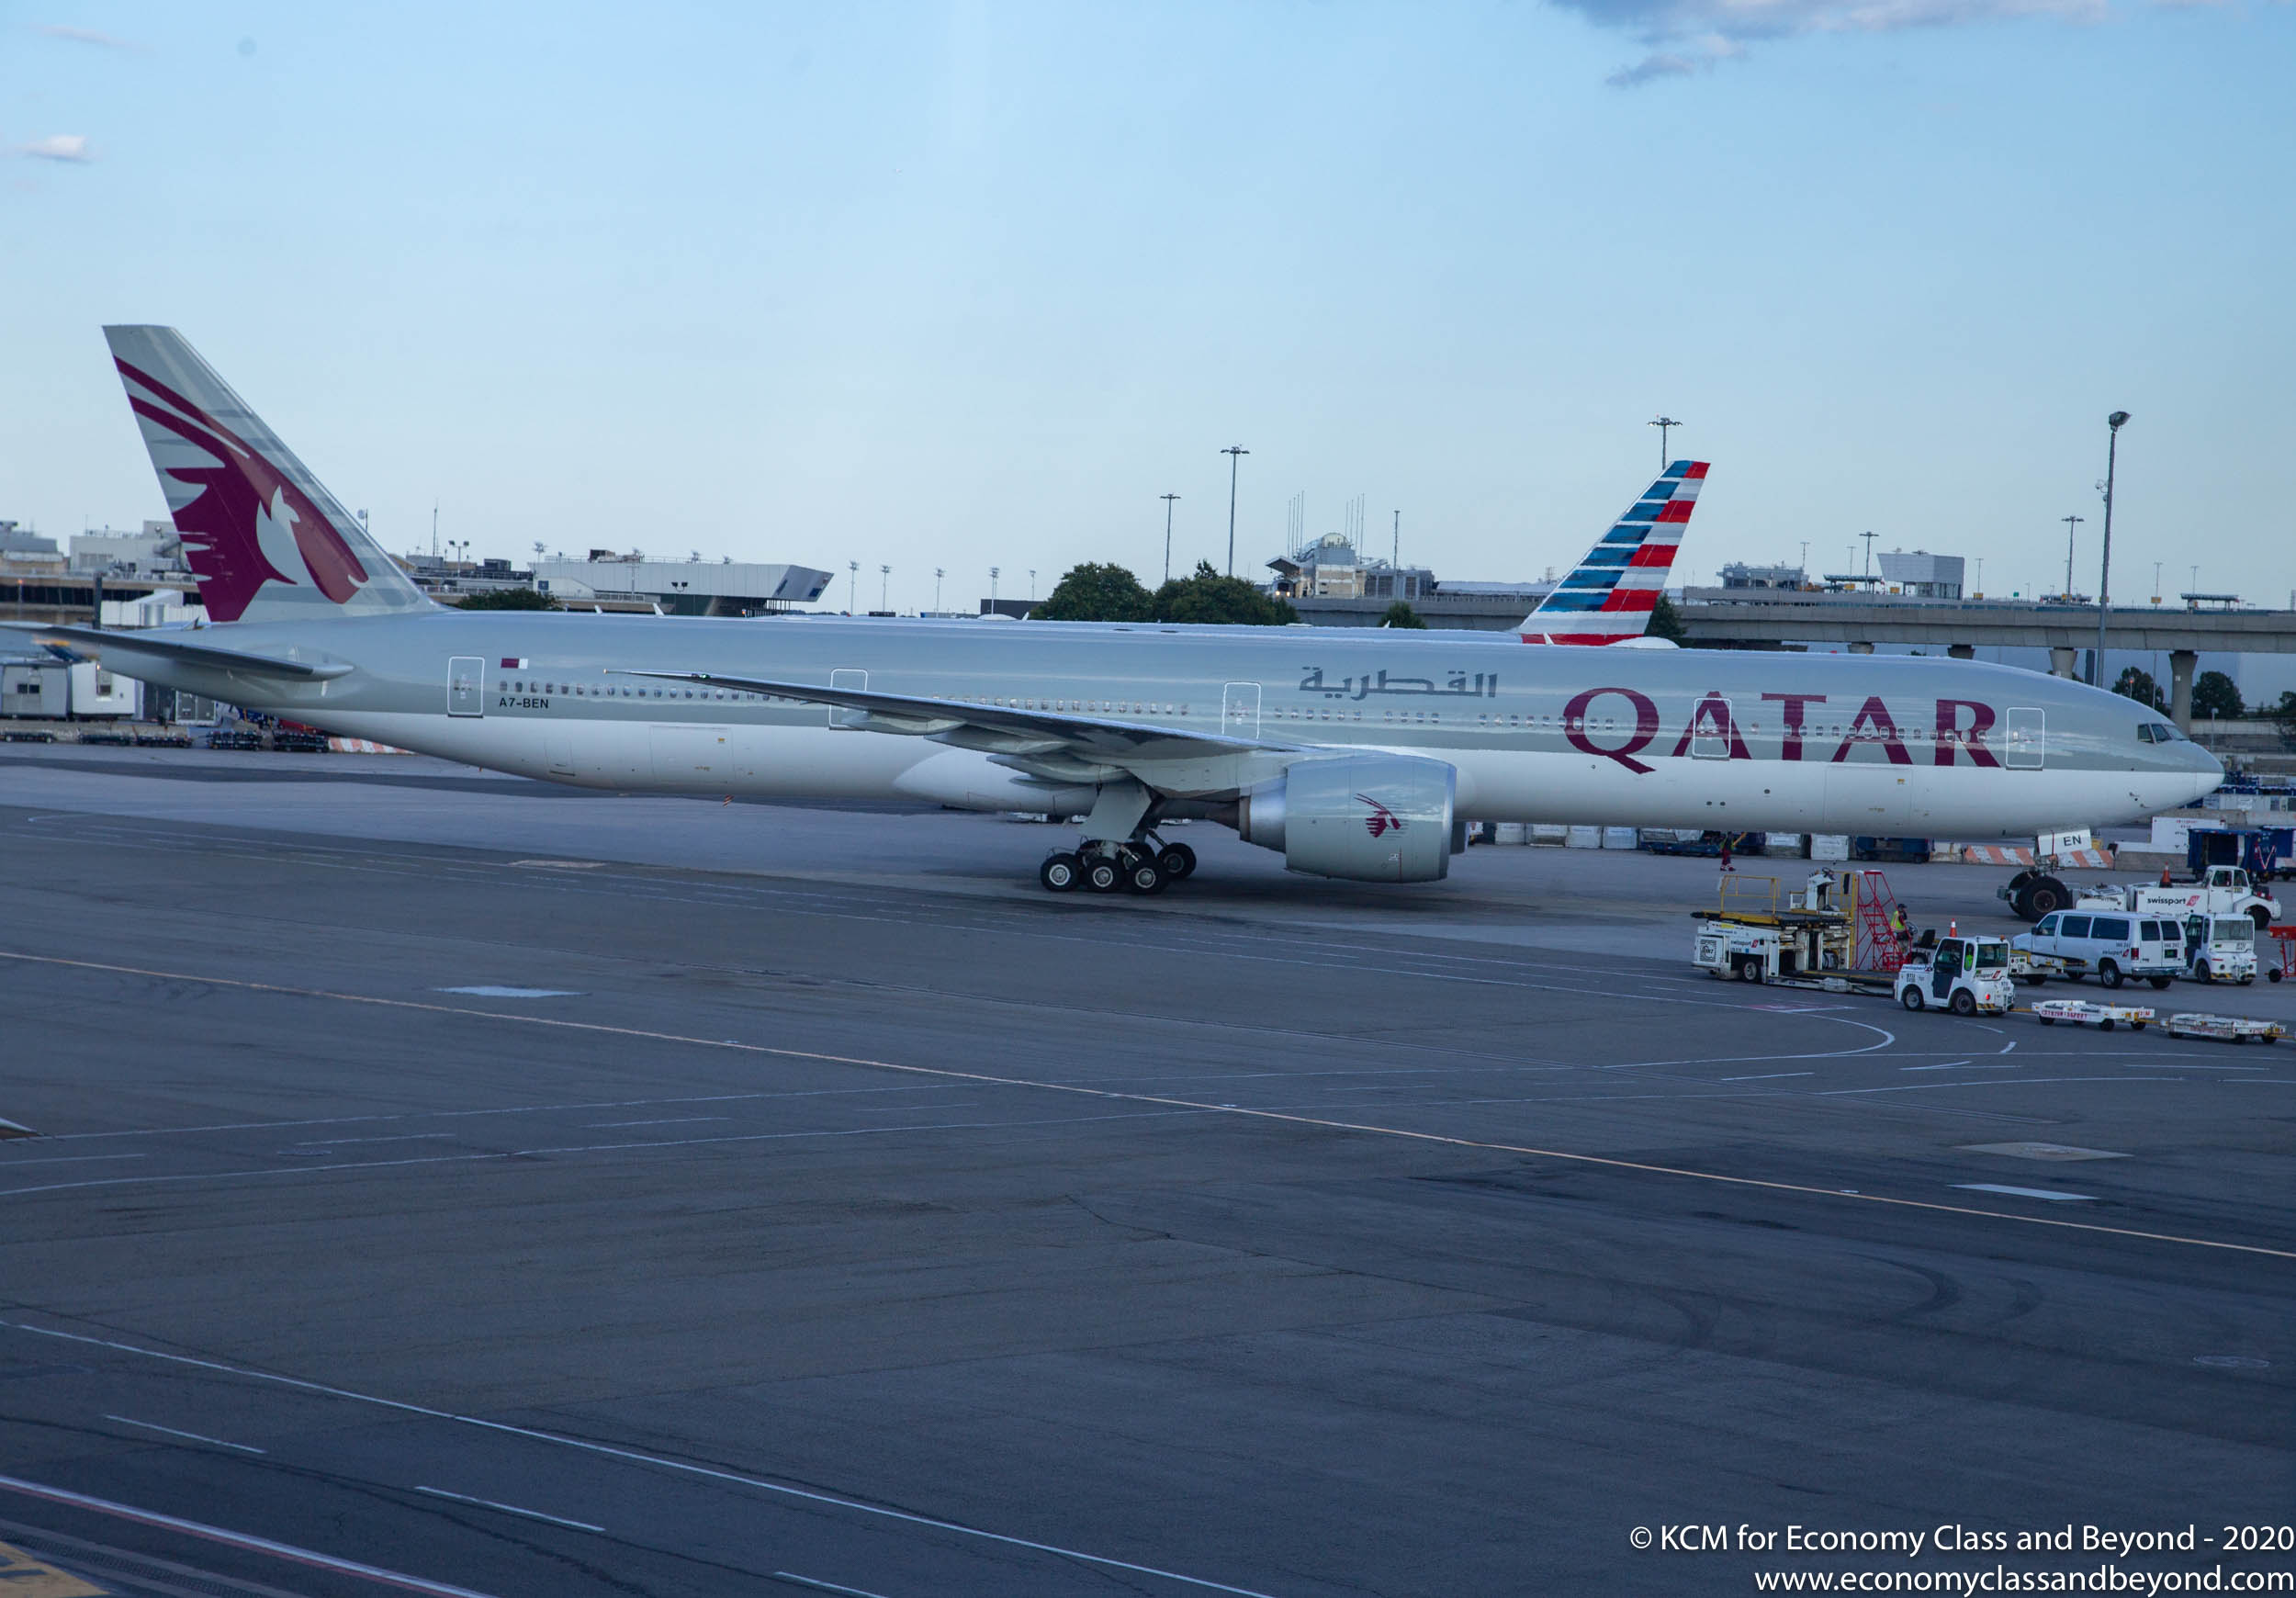 Airplane Art - Qatar Airways Boeing 777-300ER at New York JFK